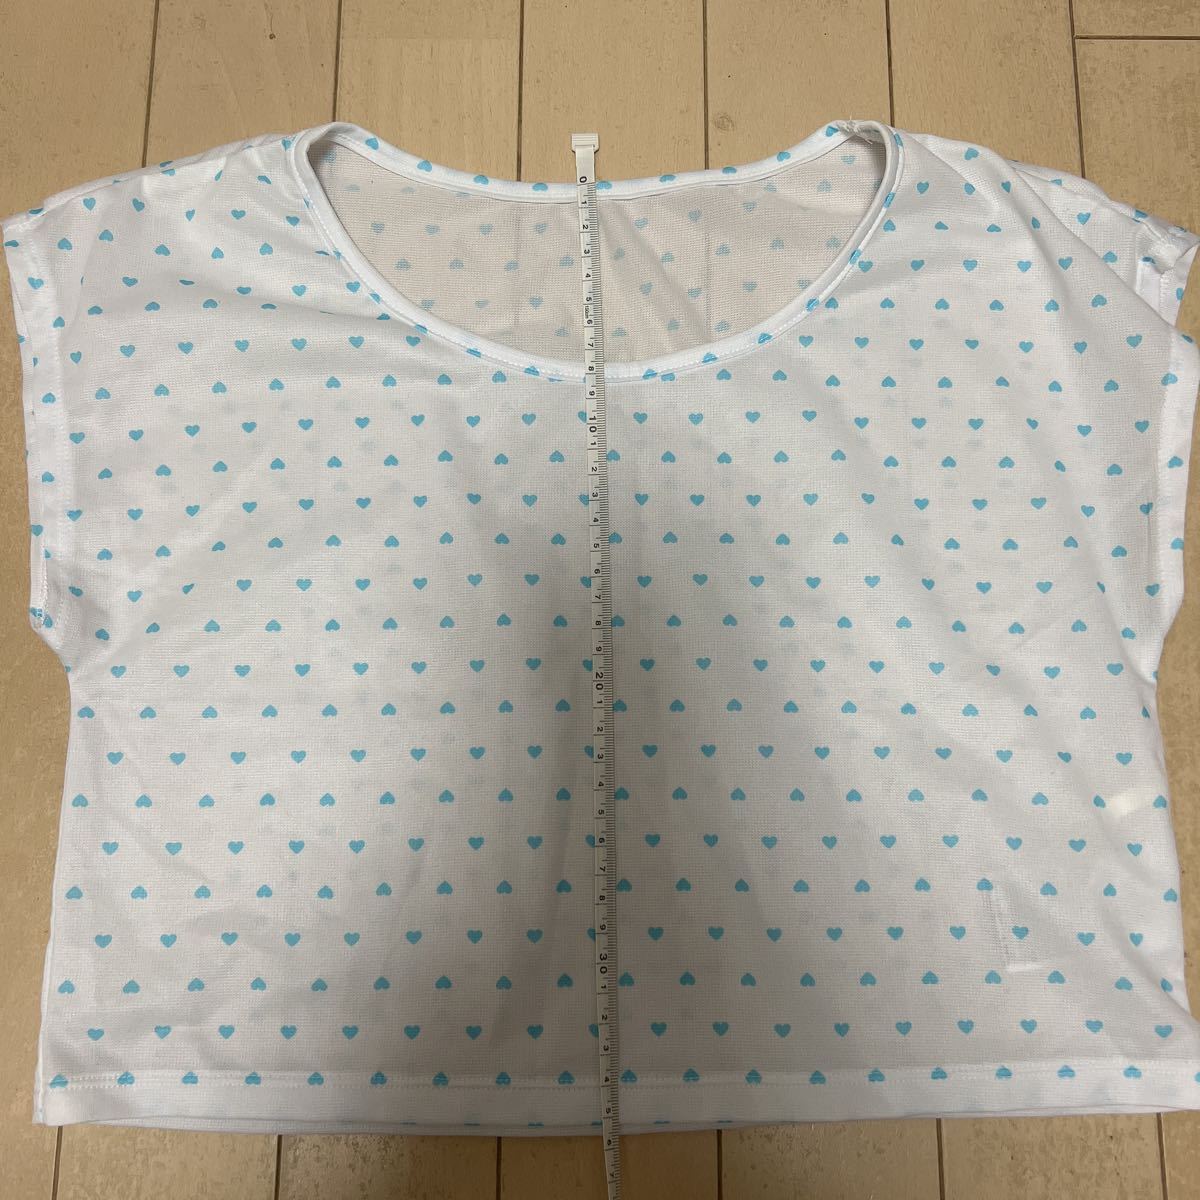 *[ новый товар не использовался ] купальный костюм комплект shortall + футболка серебристый жевательная резинка проверка Heart бледно-голубой 140*